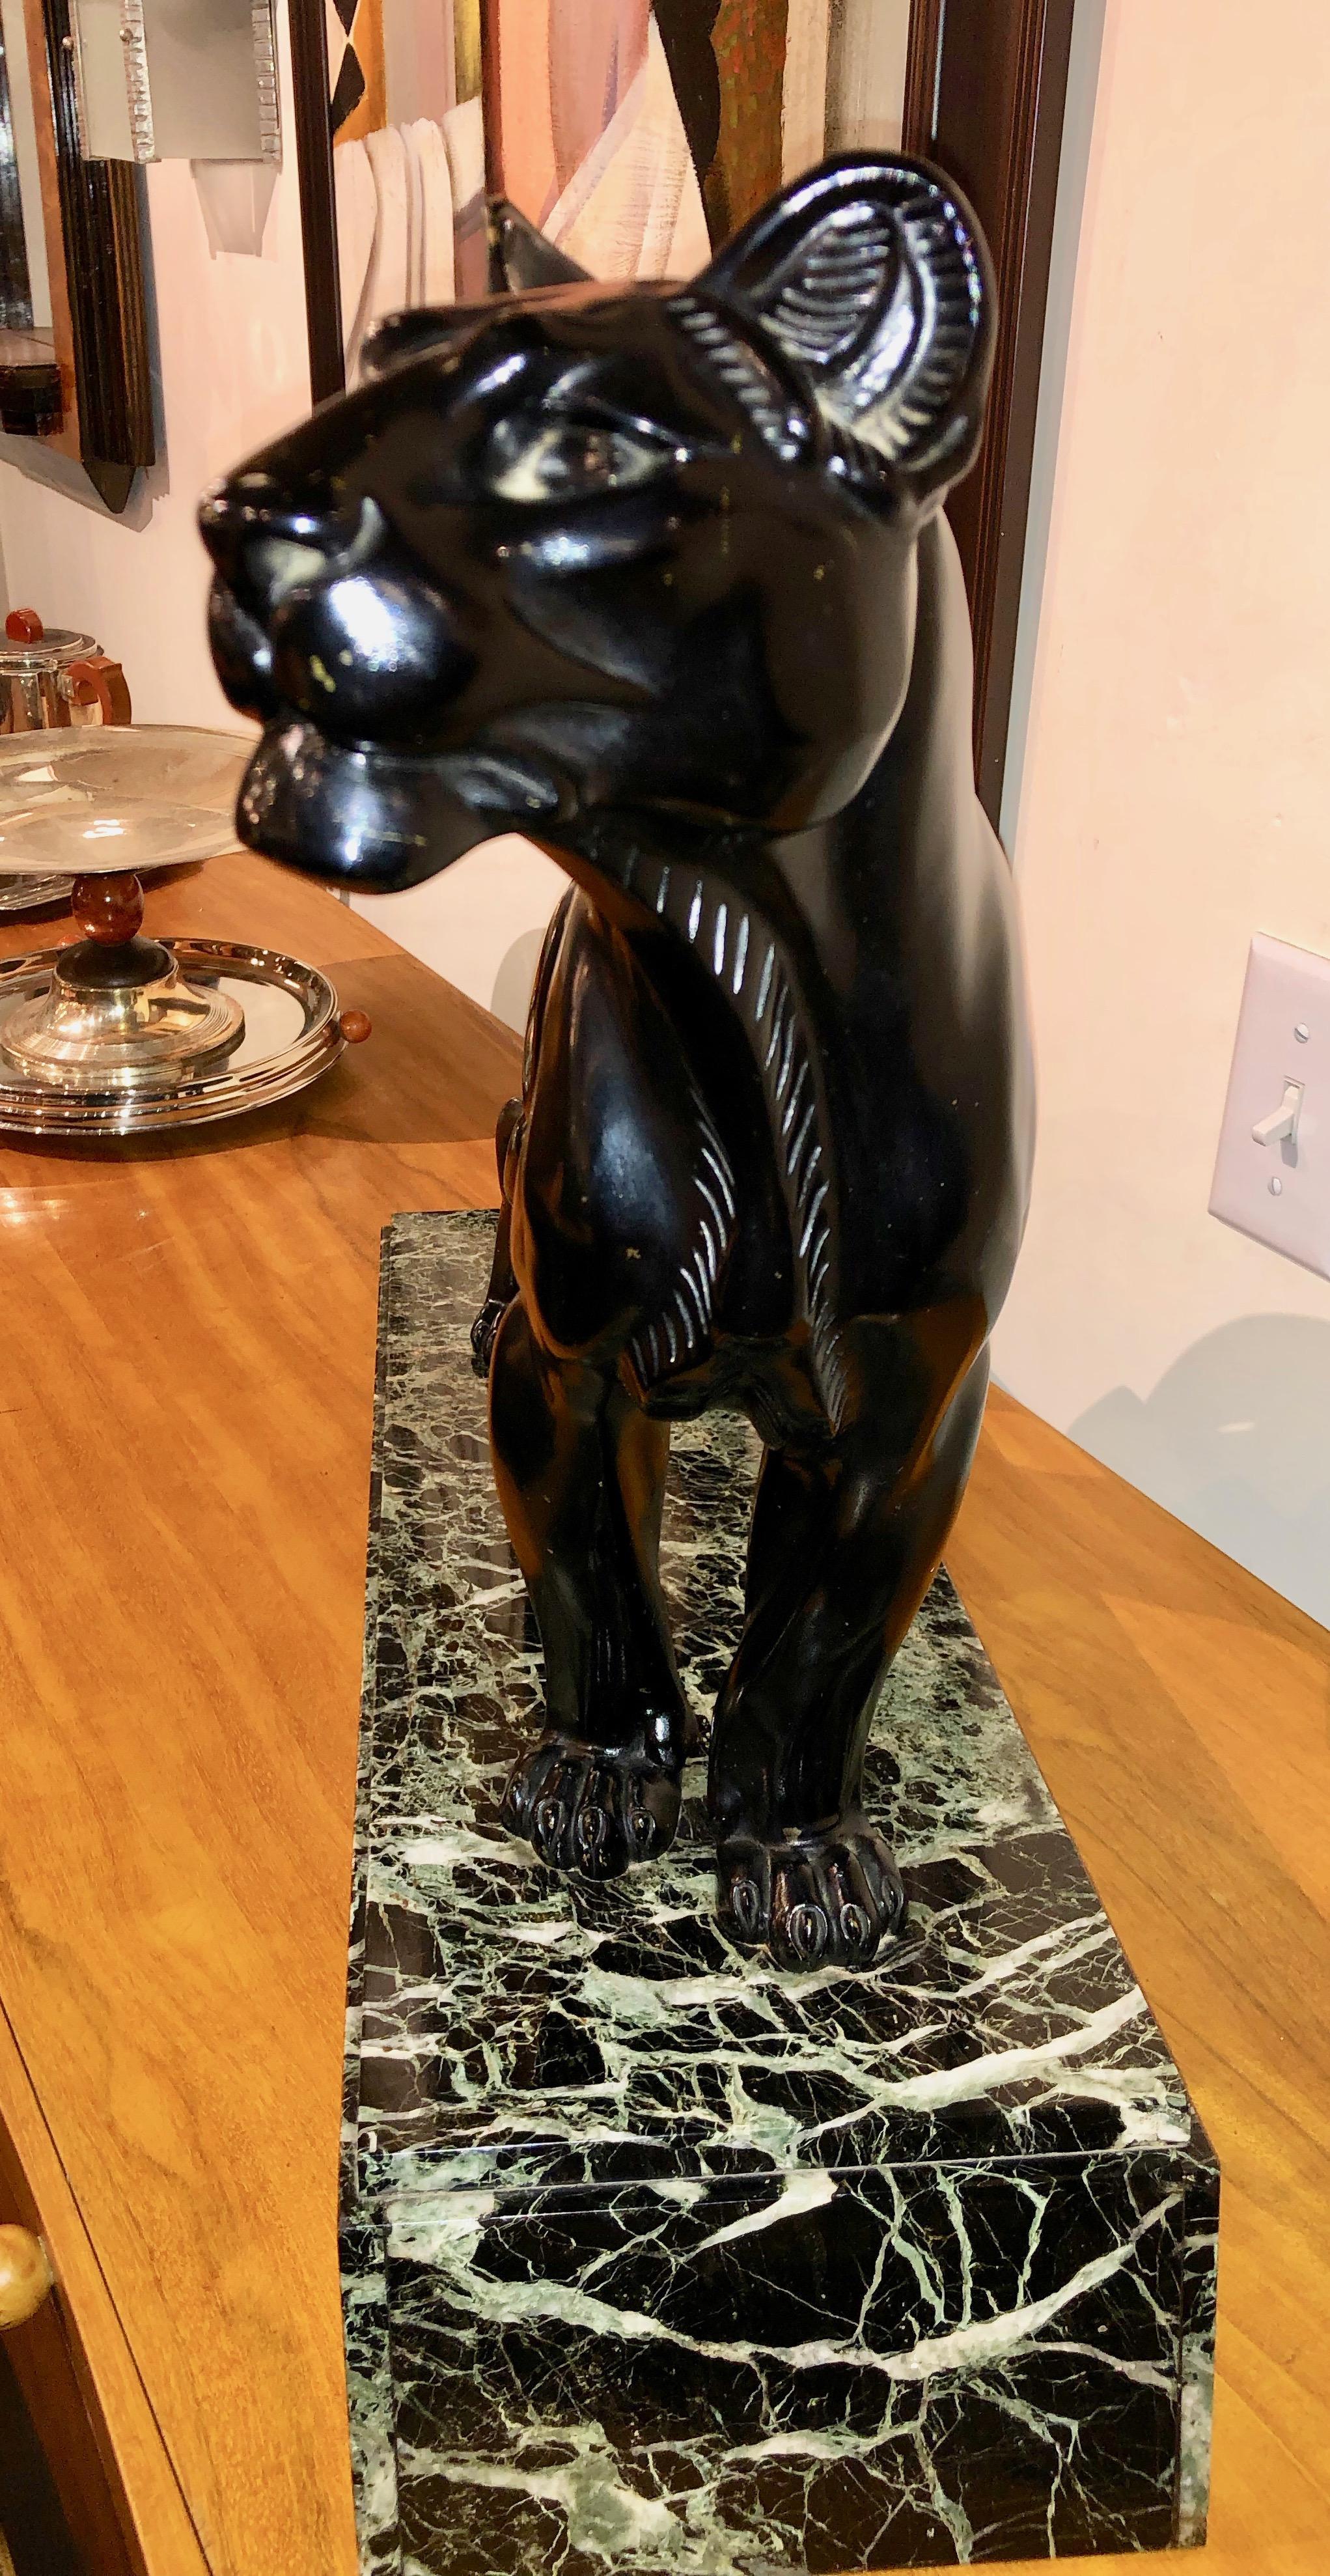 Äußerst seltene Bronzeskulptur eines schwarzen Panthers von Louis Albert Carvin, um 1930. Dies ist ein Beispiel für den reinen kubistischen Stil in schwarzer Patina, das einen Panther zeigt, der groß und stolz ist. Diese grimmige Katze hat eine